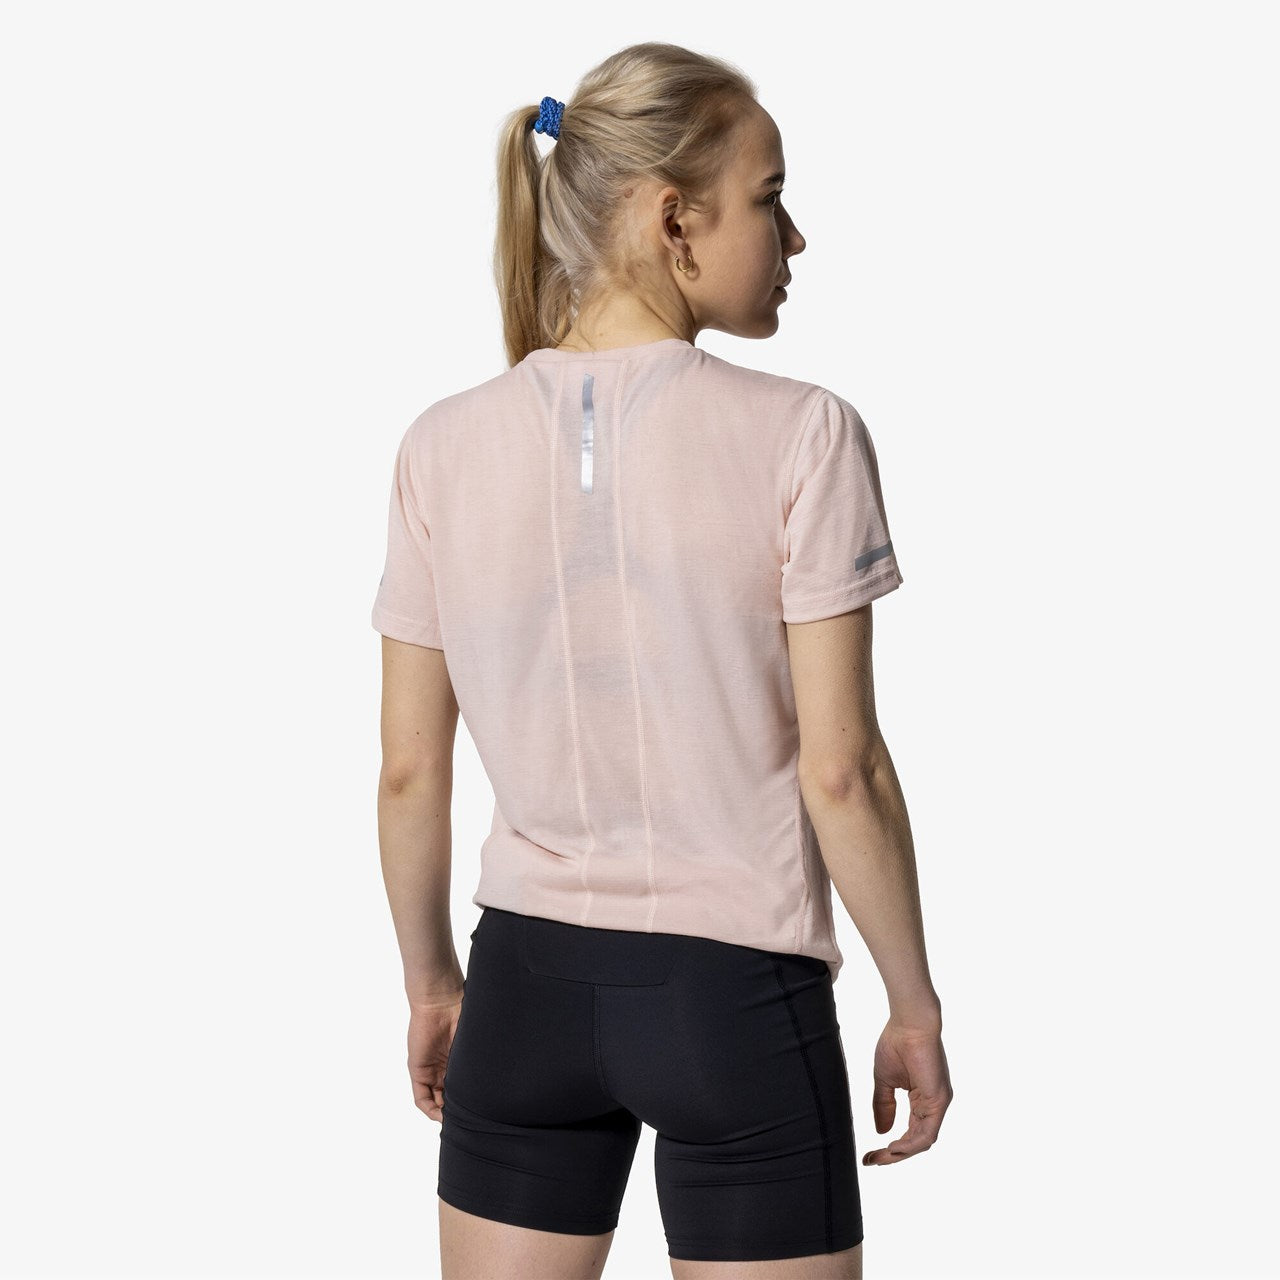 Pace - Women's Short Sleeve T-Shirt